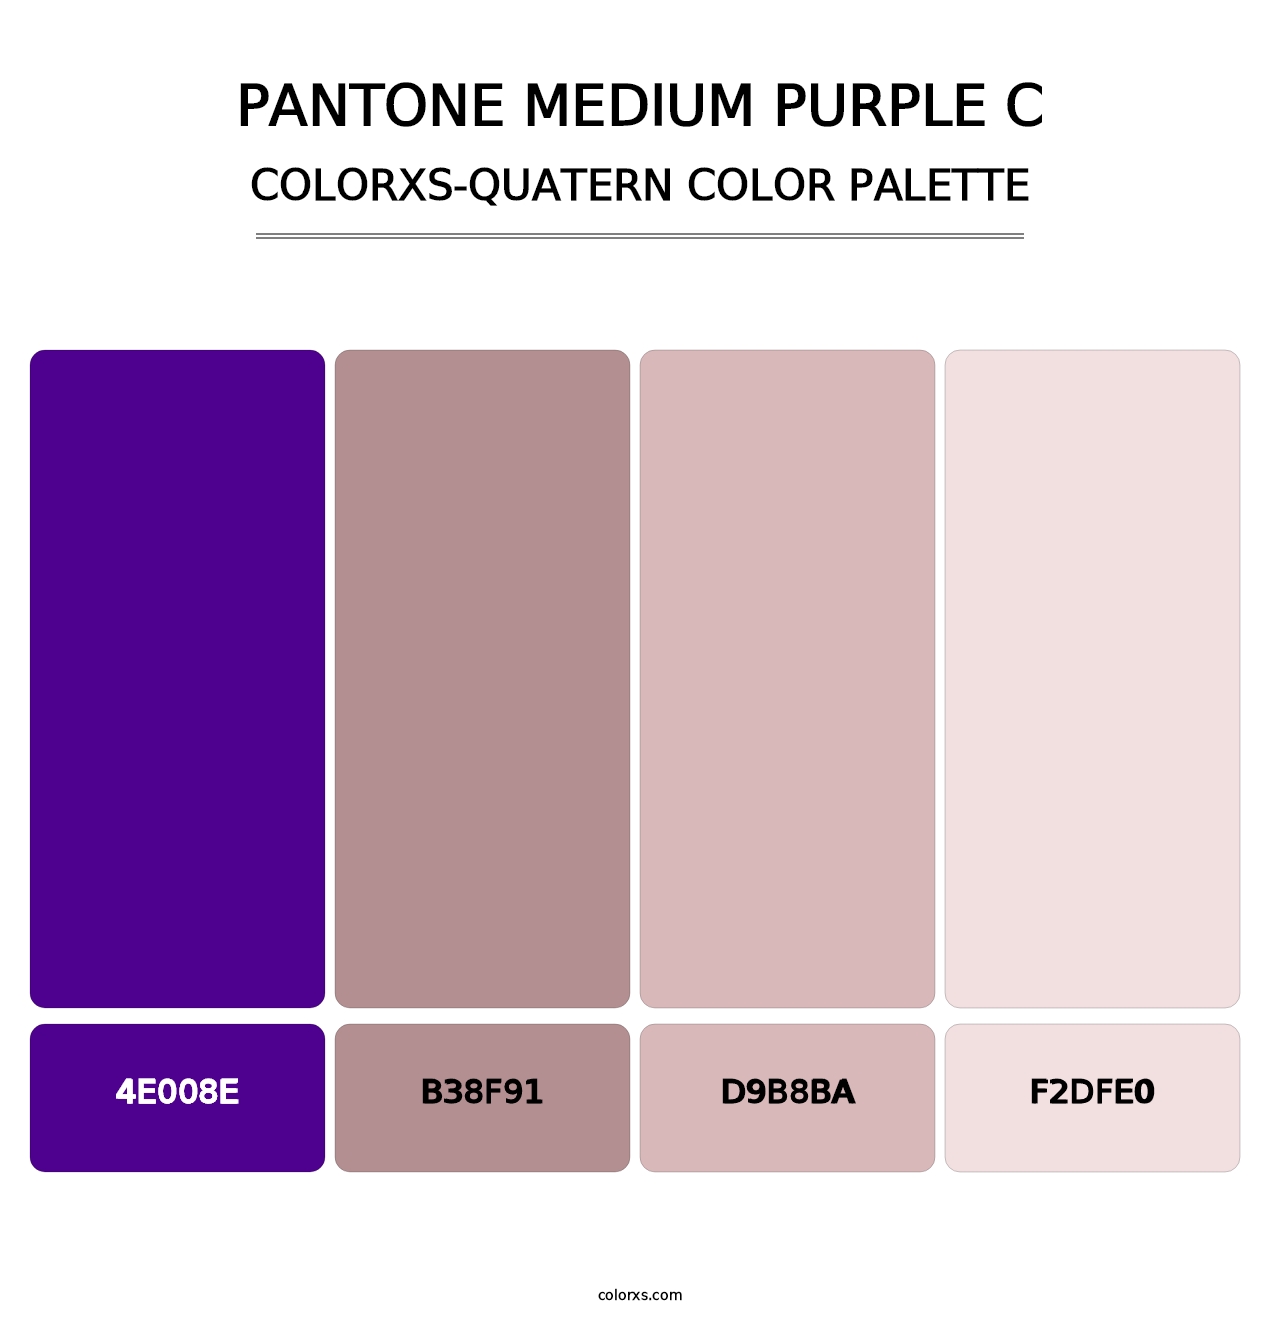 PANTONE Medium Purple C - Colorxs Quatern Palette